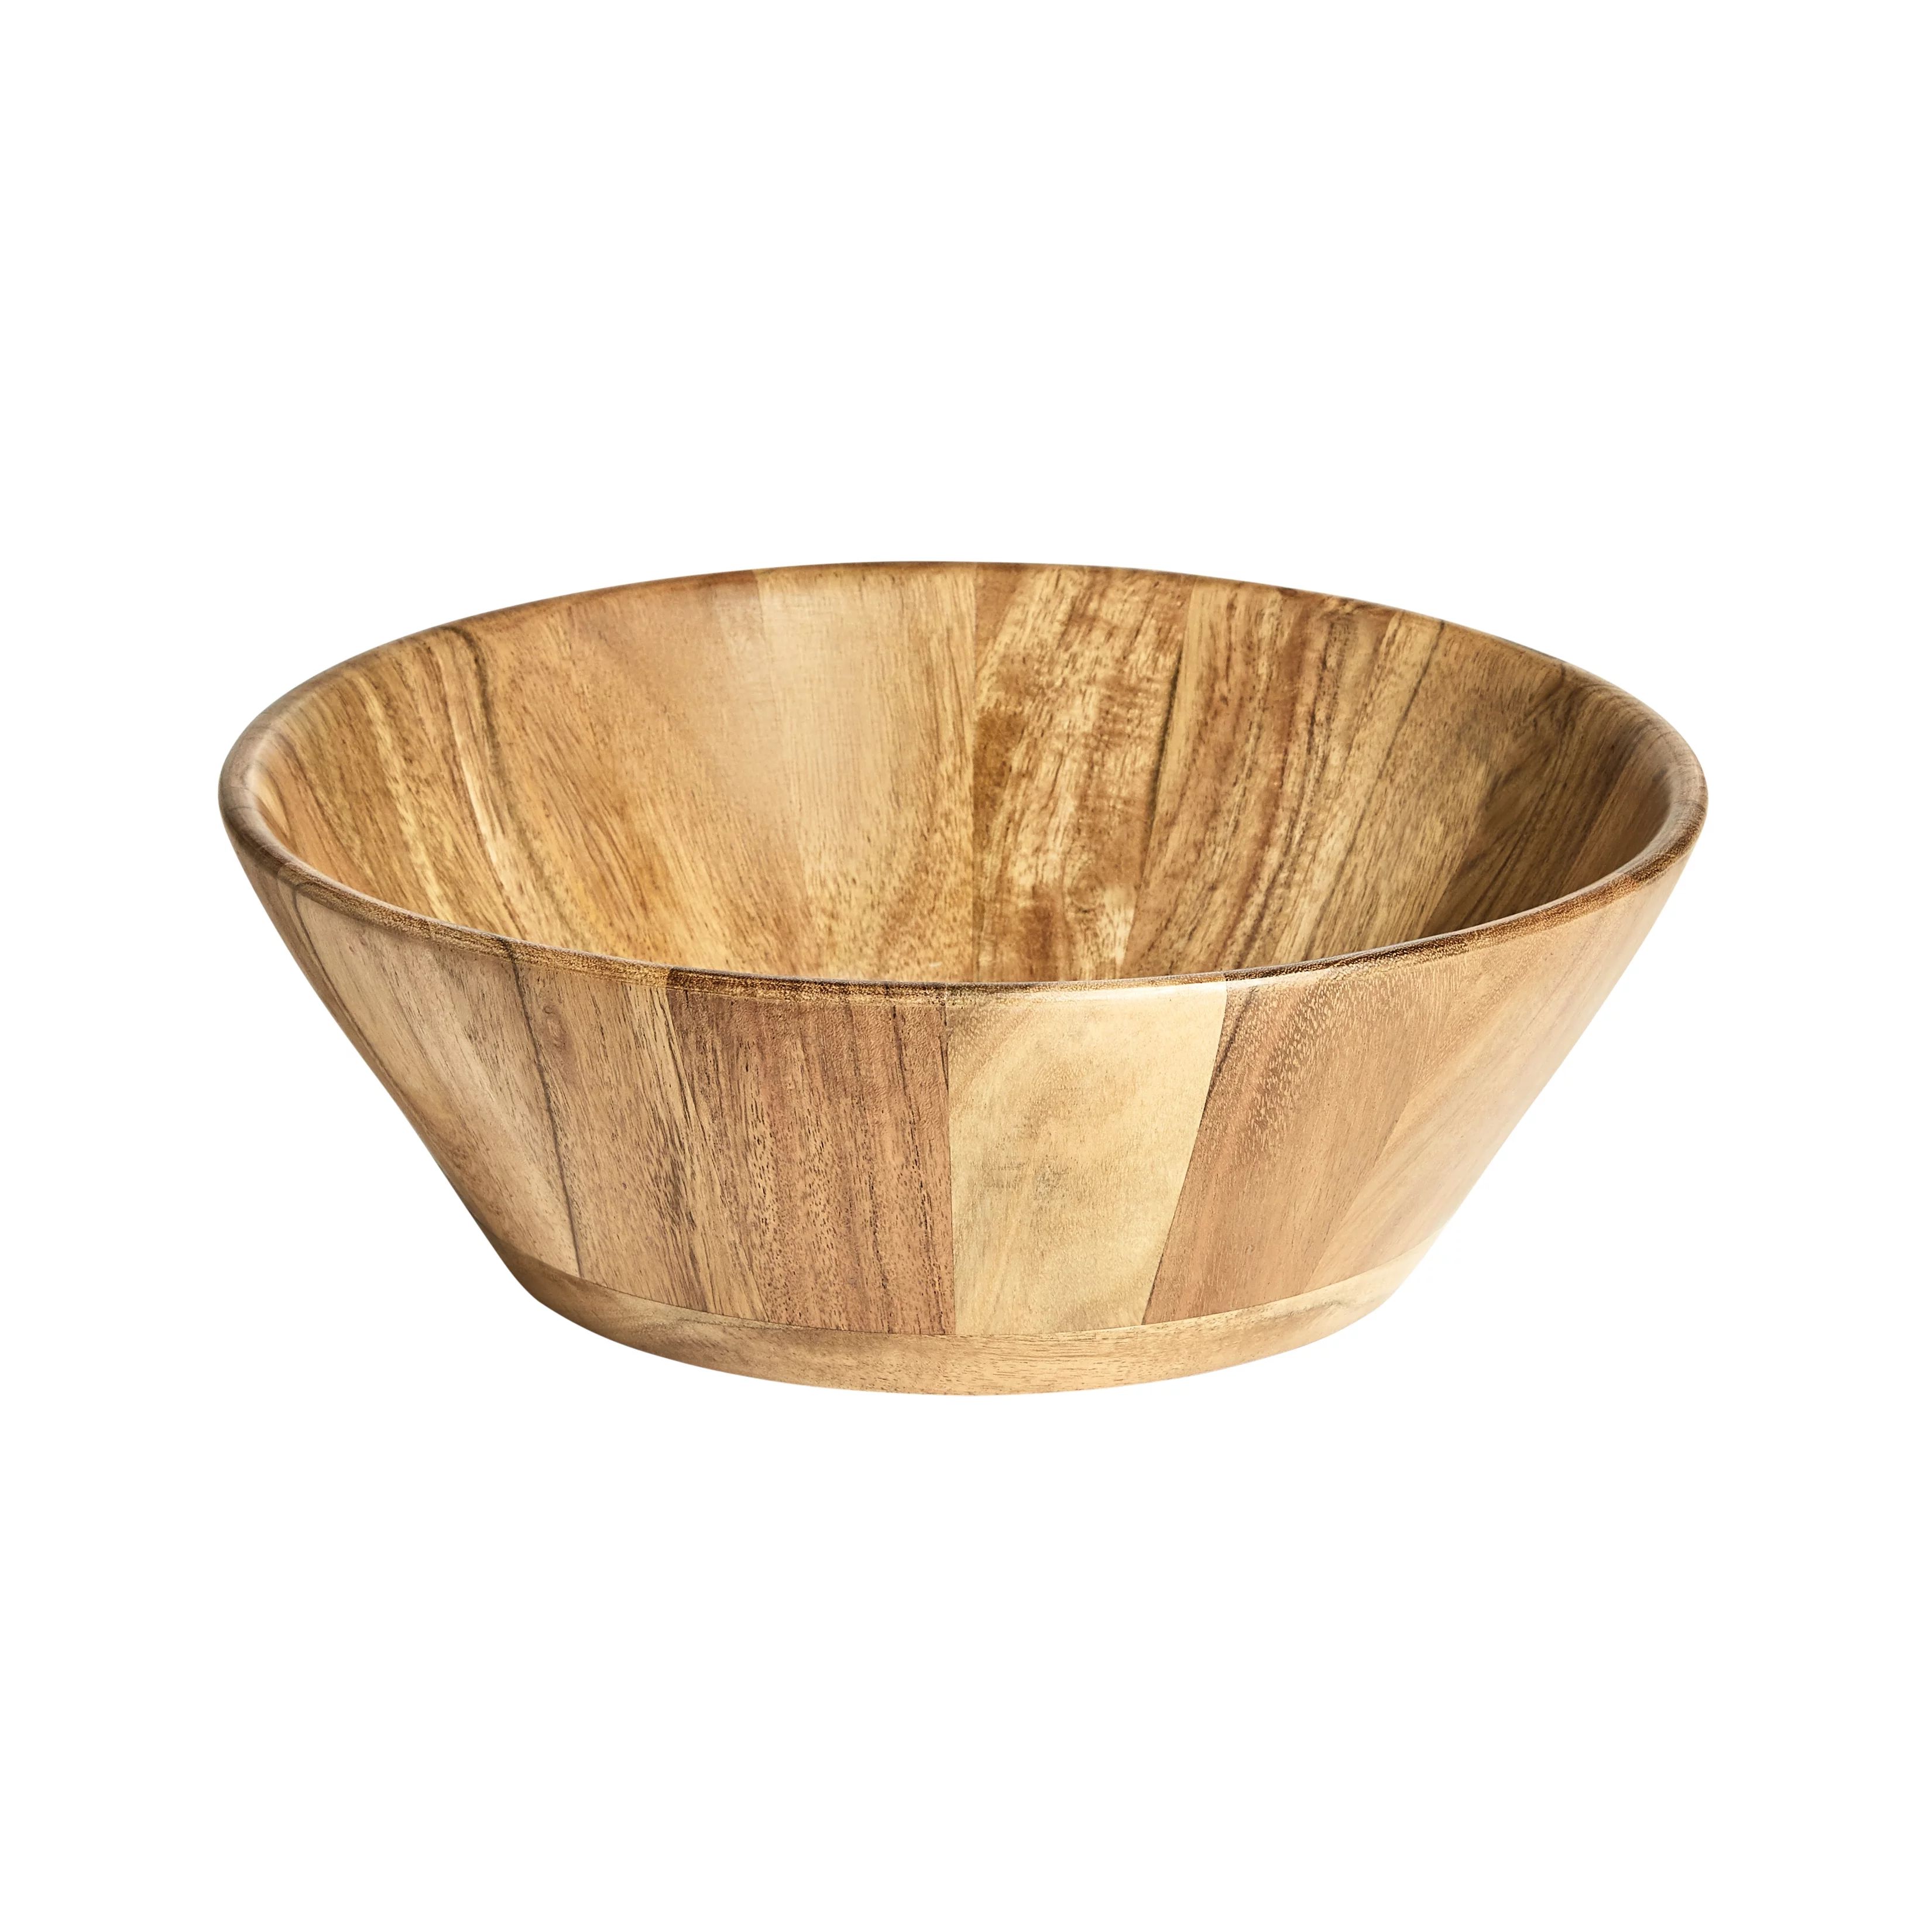 Better Homes & Gardens Acacia Wood Large Angled Bowl, Natural Finish | Walmart (US)